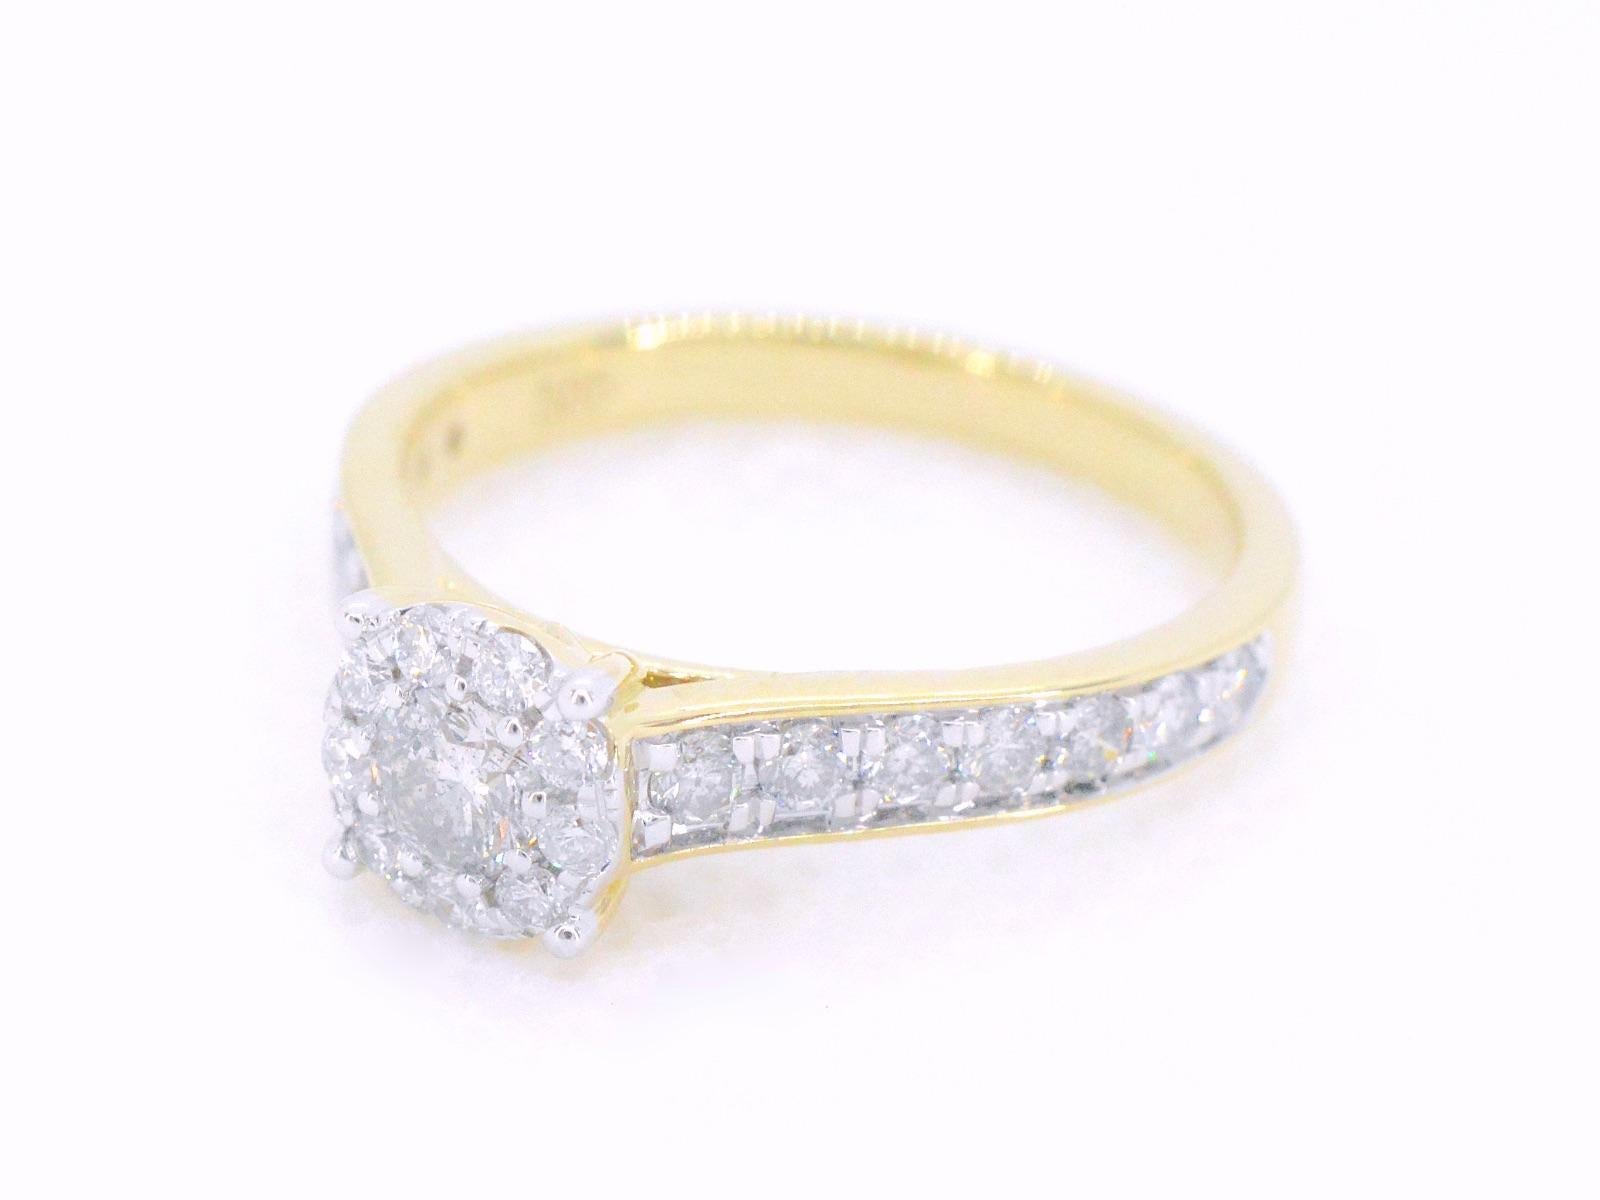 Une bague entourage en or jaune avec diamants est un bijou à couper le souffle qui présente un diamant central entouré de diamants plus petits, sertis dans une bande d'or jaune lustré. Le motif de l'entourage met en valeur la beauté de la pierre